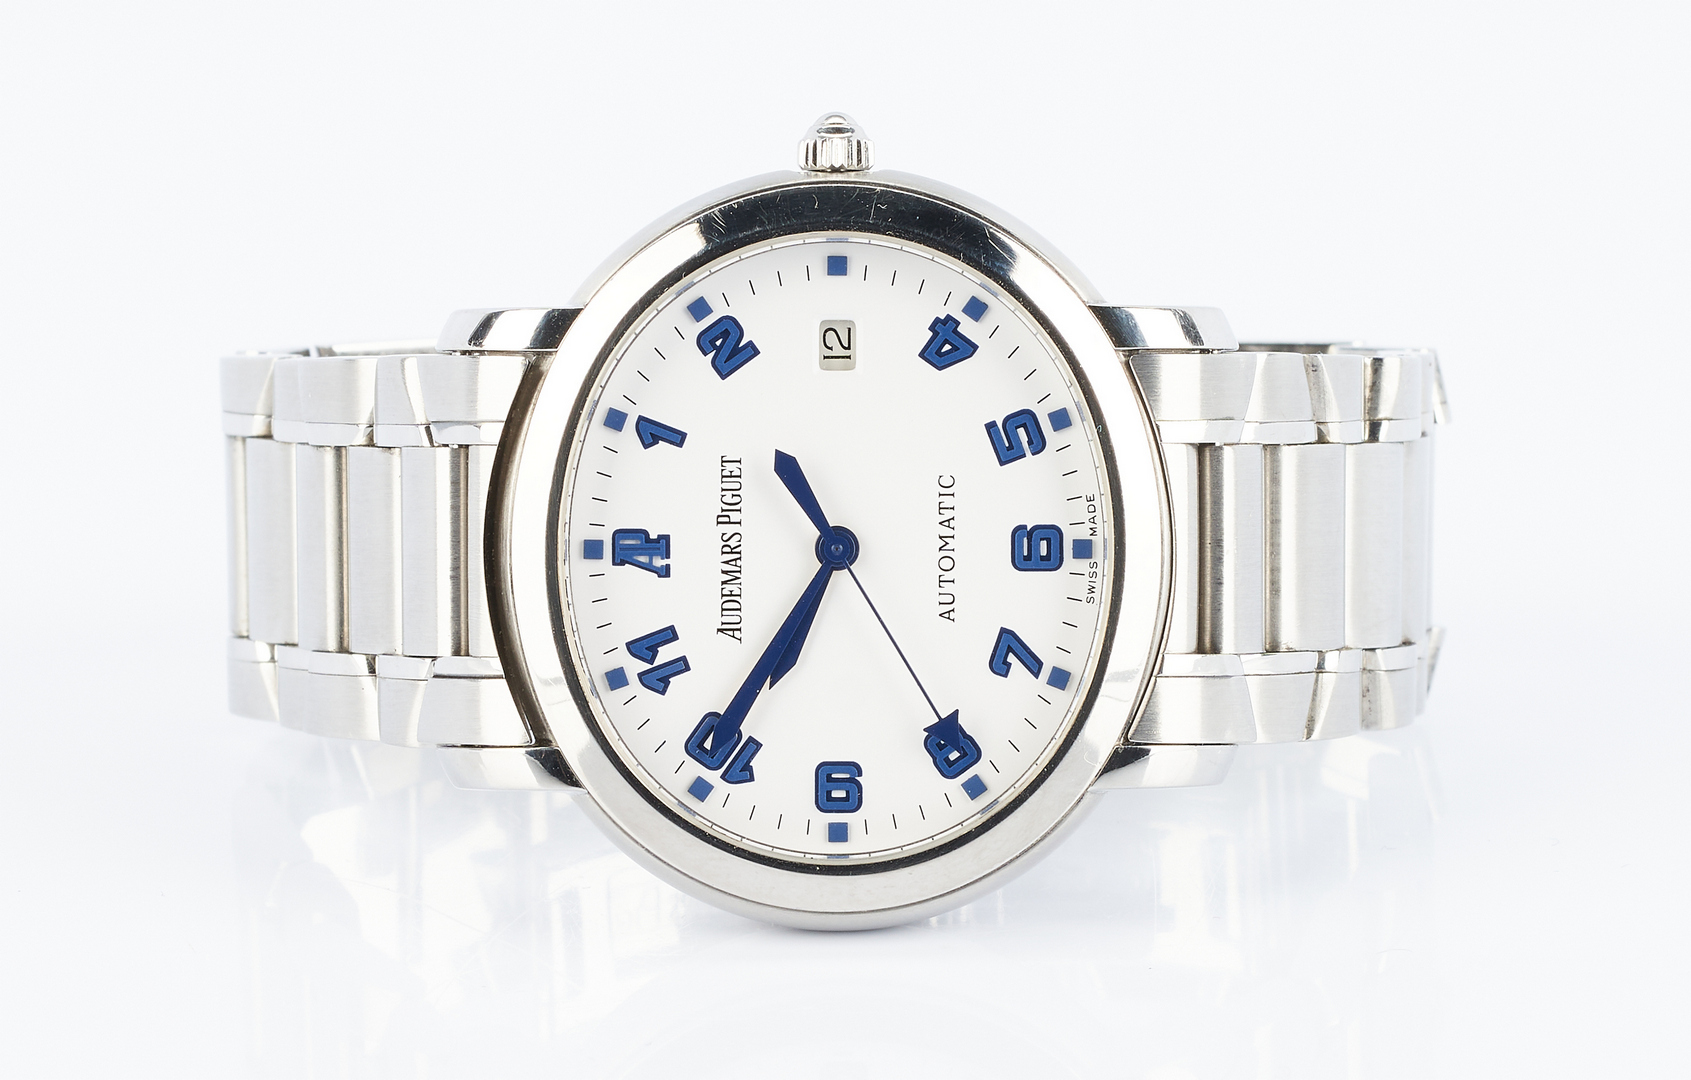 Lot 46: Audemars Piguet Millenary Wrist Watch